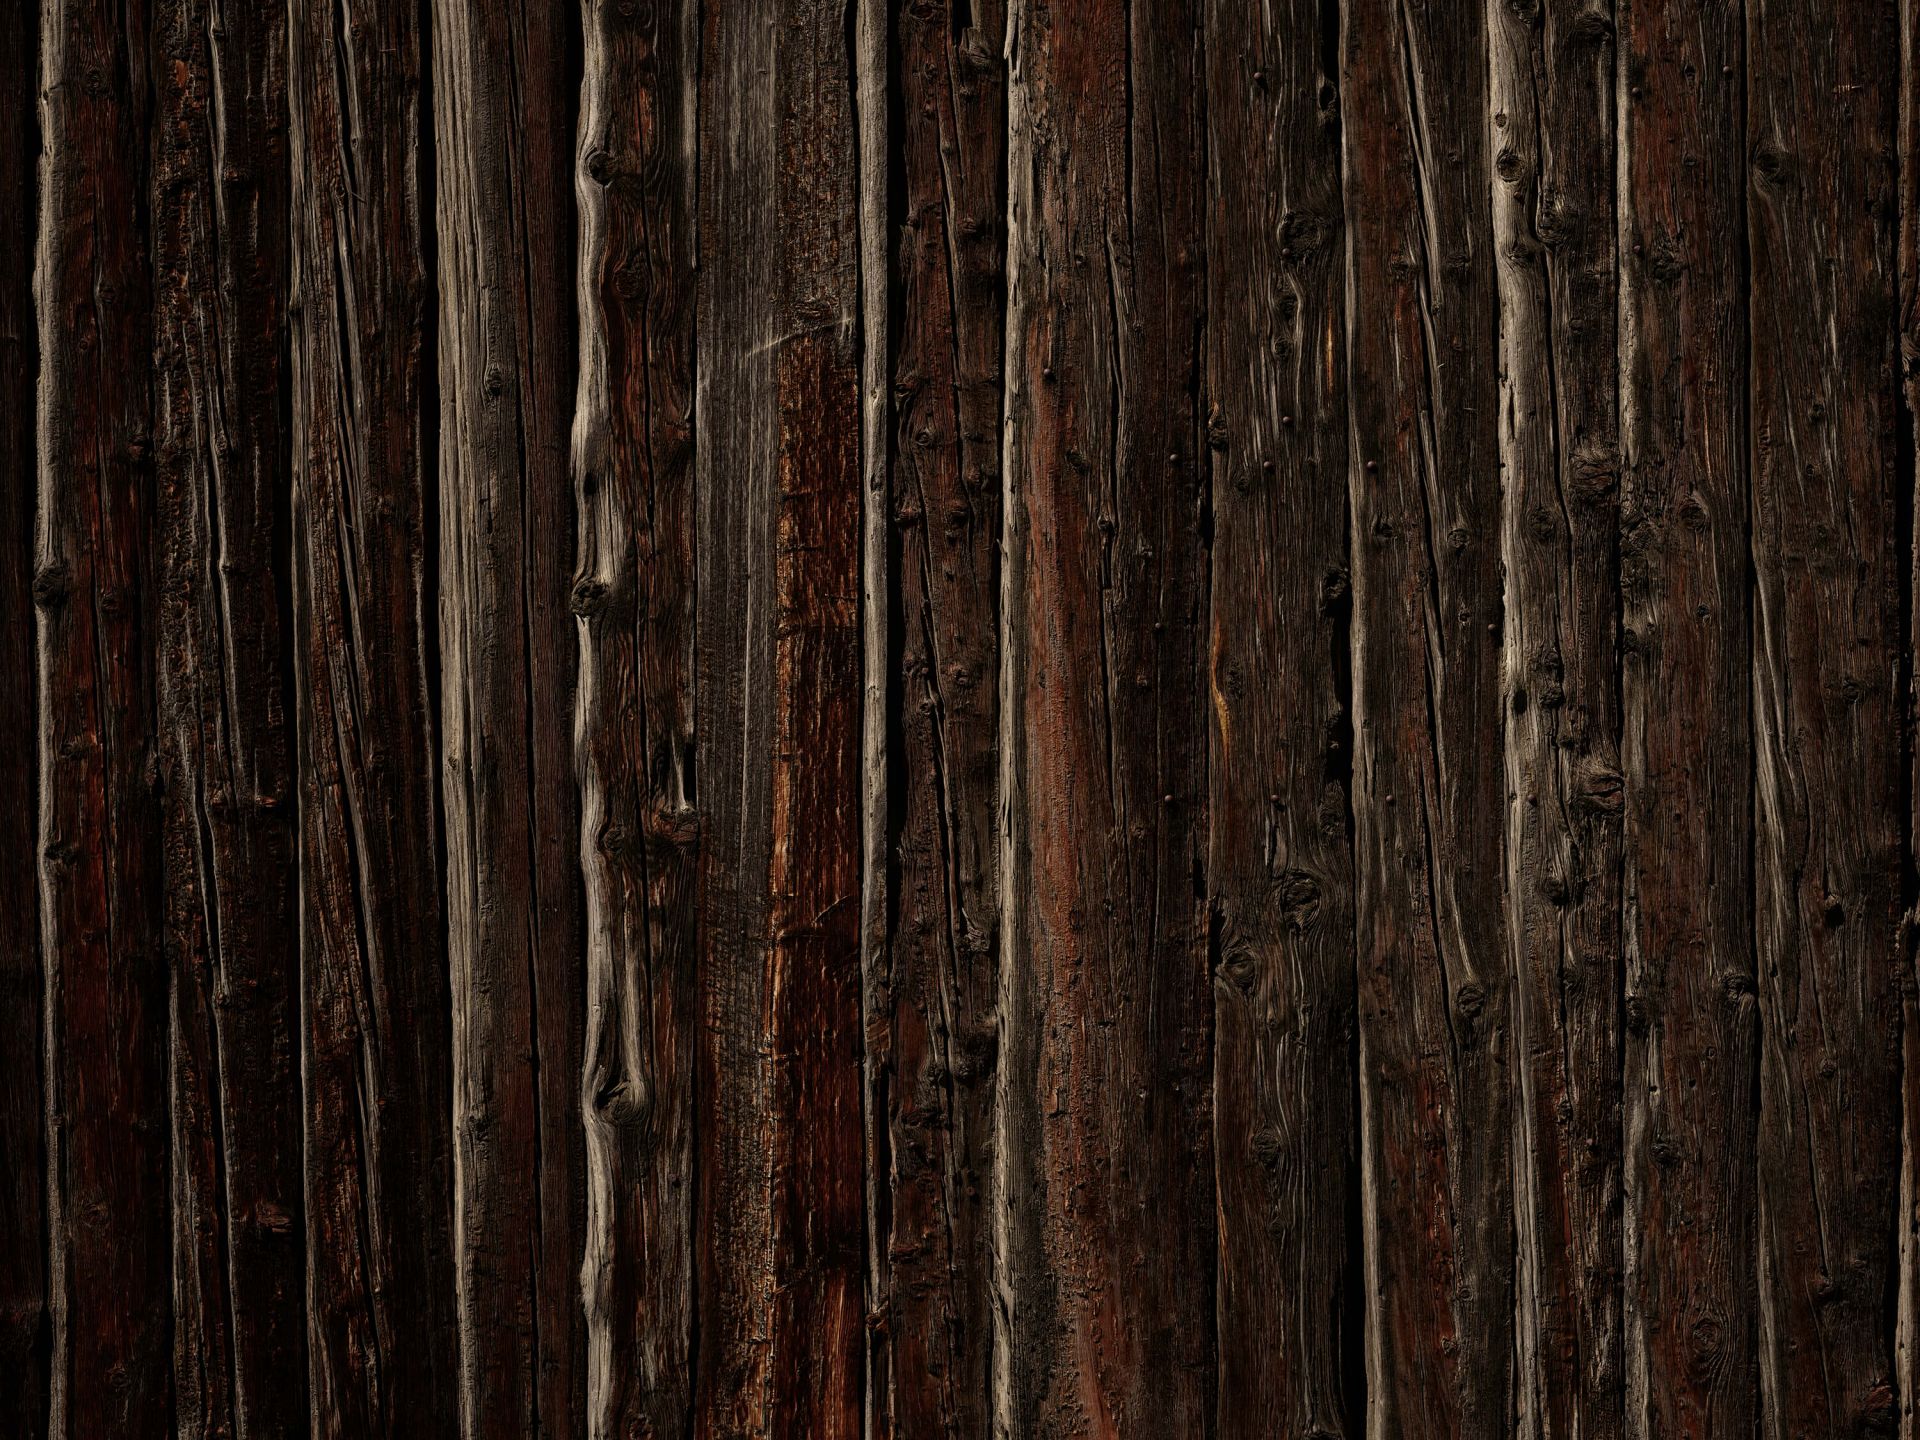 Keelholte Vervolg Maak plaats Ruw hout met spijkers - Fotobehang